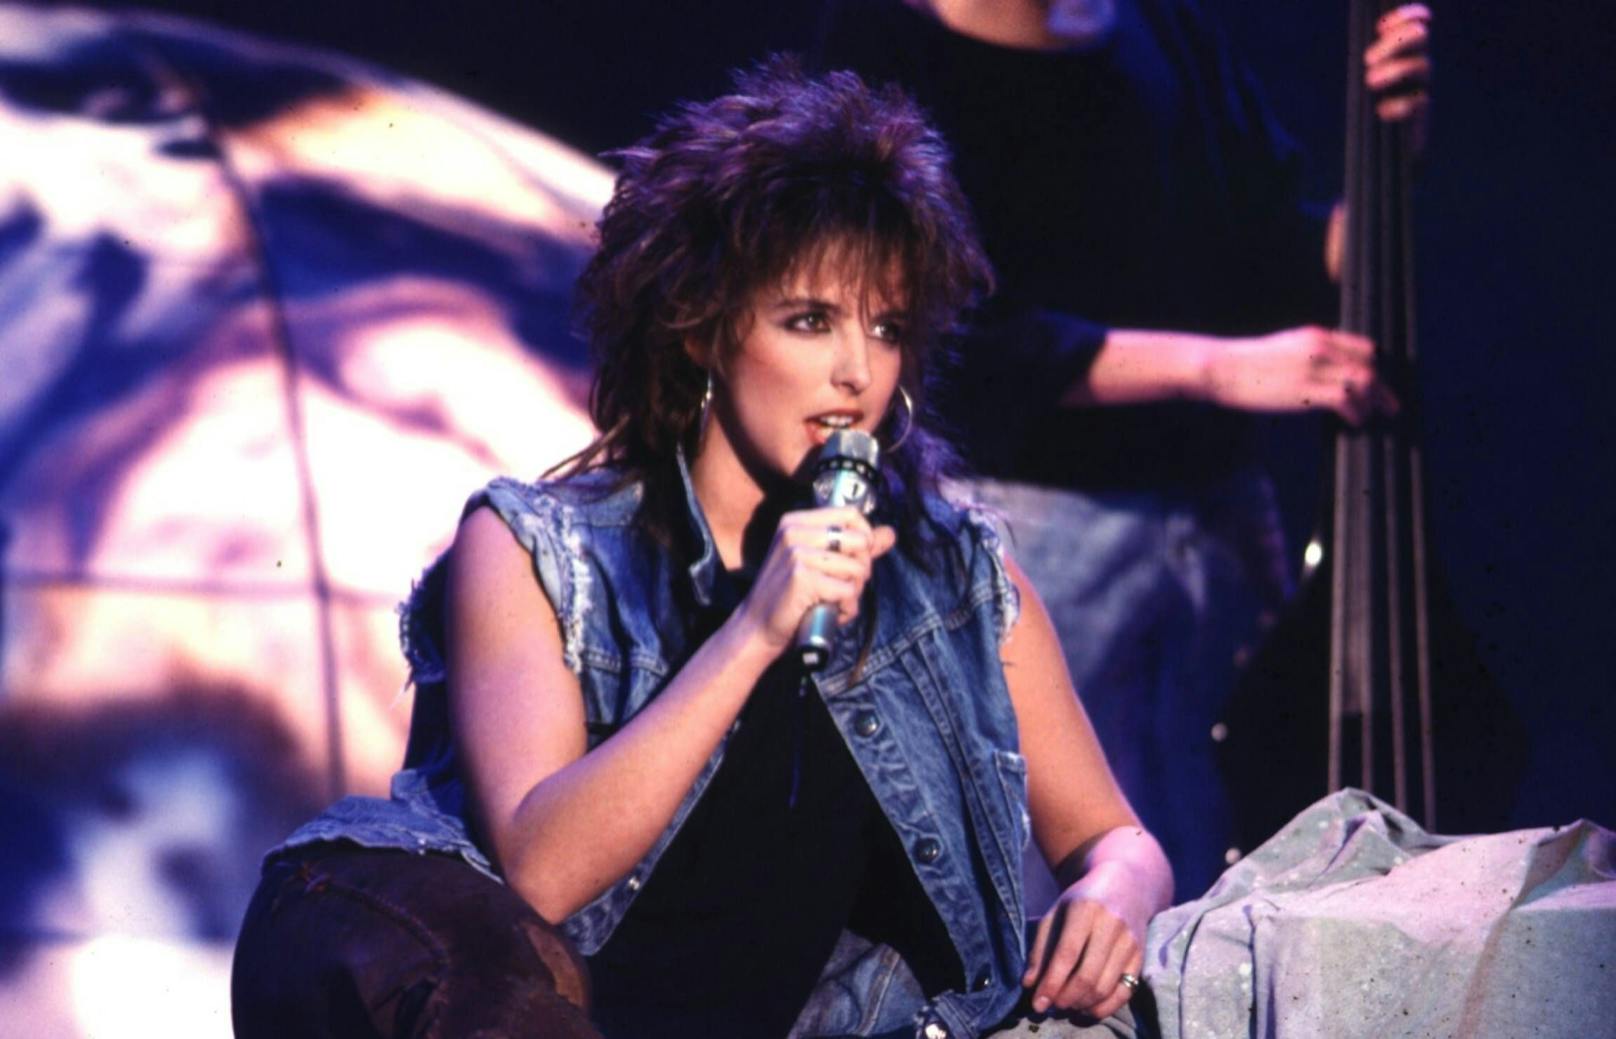 Ihre zweite Single "99 Luftballons" erschien 1983 und feierte internationale Erfolge.